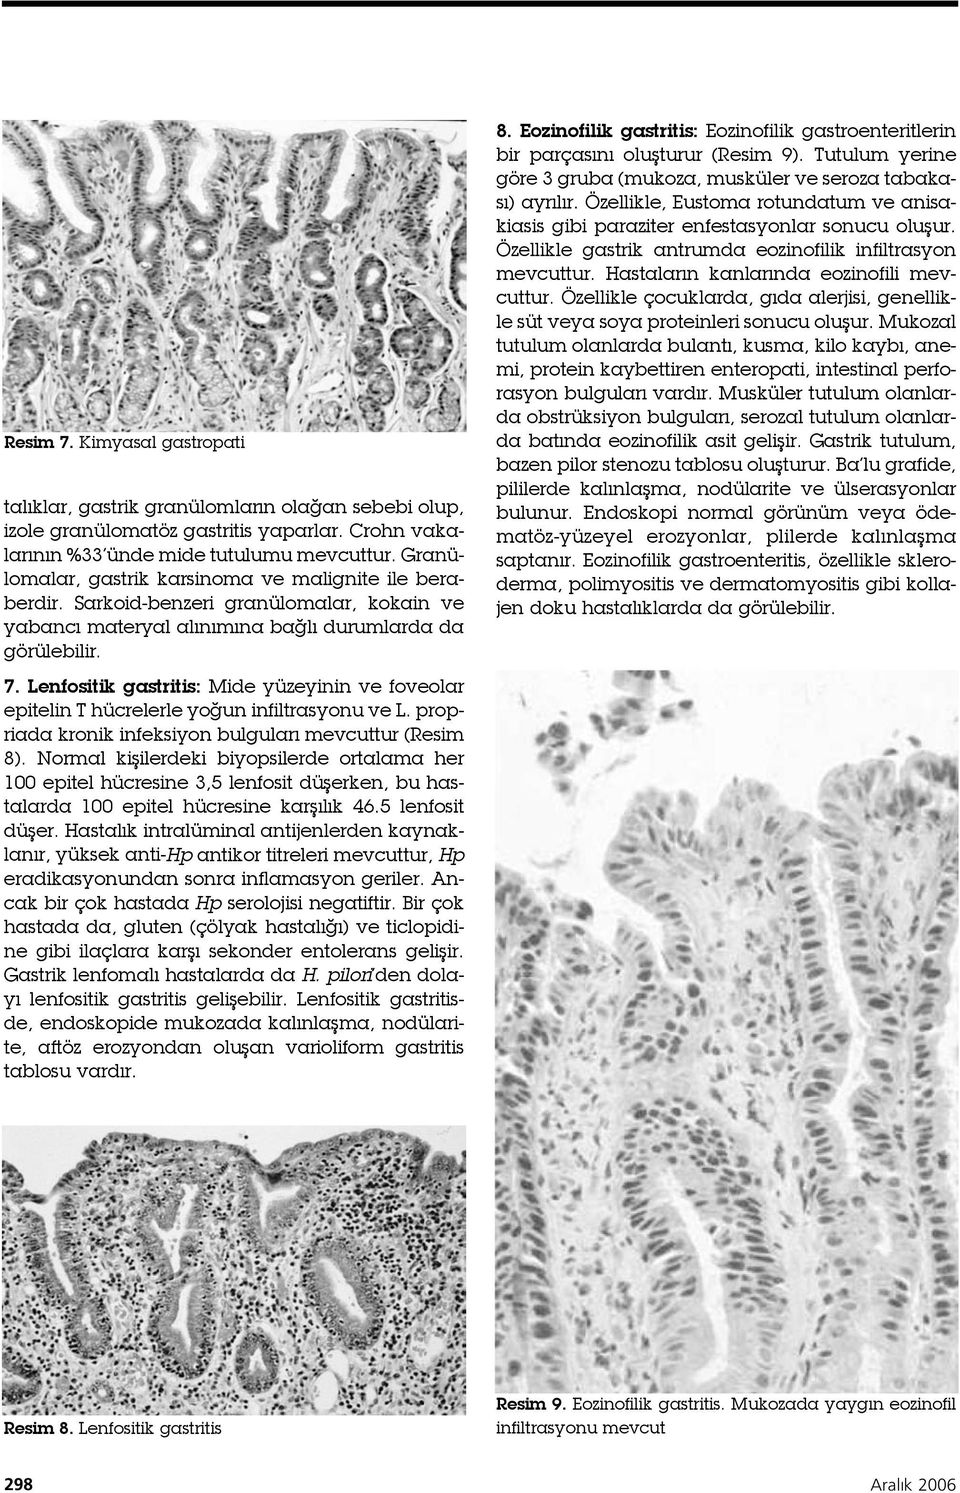 Lenfositik gastritis: Mide yüzeyinin ve foveolar epitelin T hücrelerle yoğun infiltrasyonu ve L. propriada kronik infeksiyon bulguları mevcuttur (Resim 8).